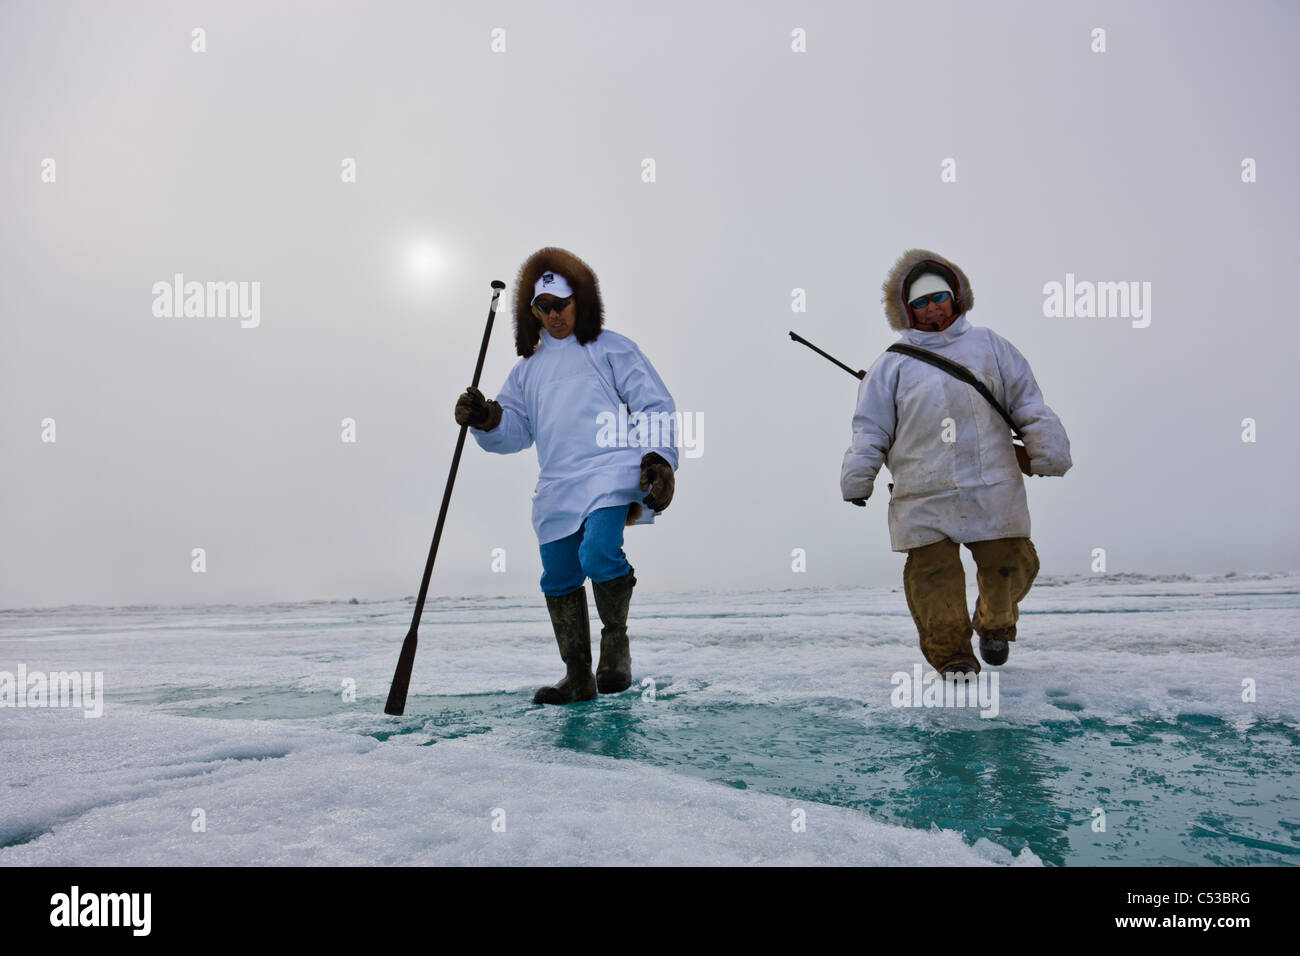 Les chasseurs esquimaux Inupiaq transporter un fusil et bâton de marche en marchant sur la glace de rive le long de la mer de Tchoukotka, Barrow, Alaska Banque D'Images